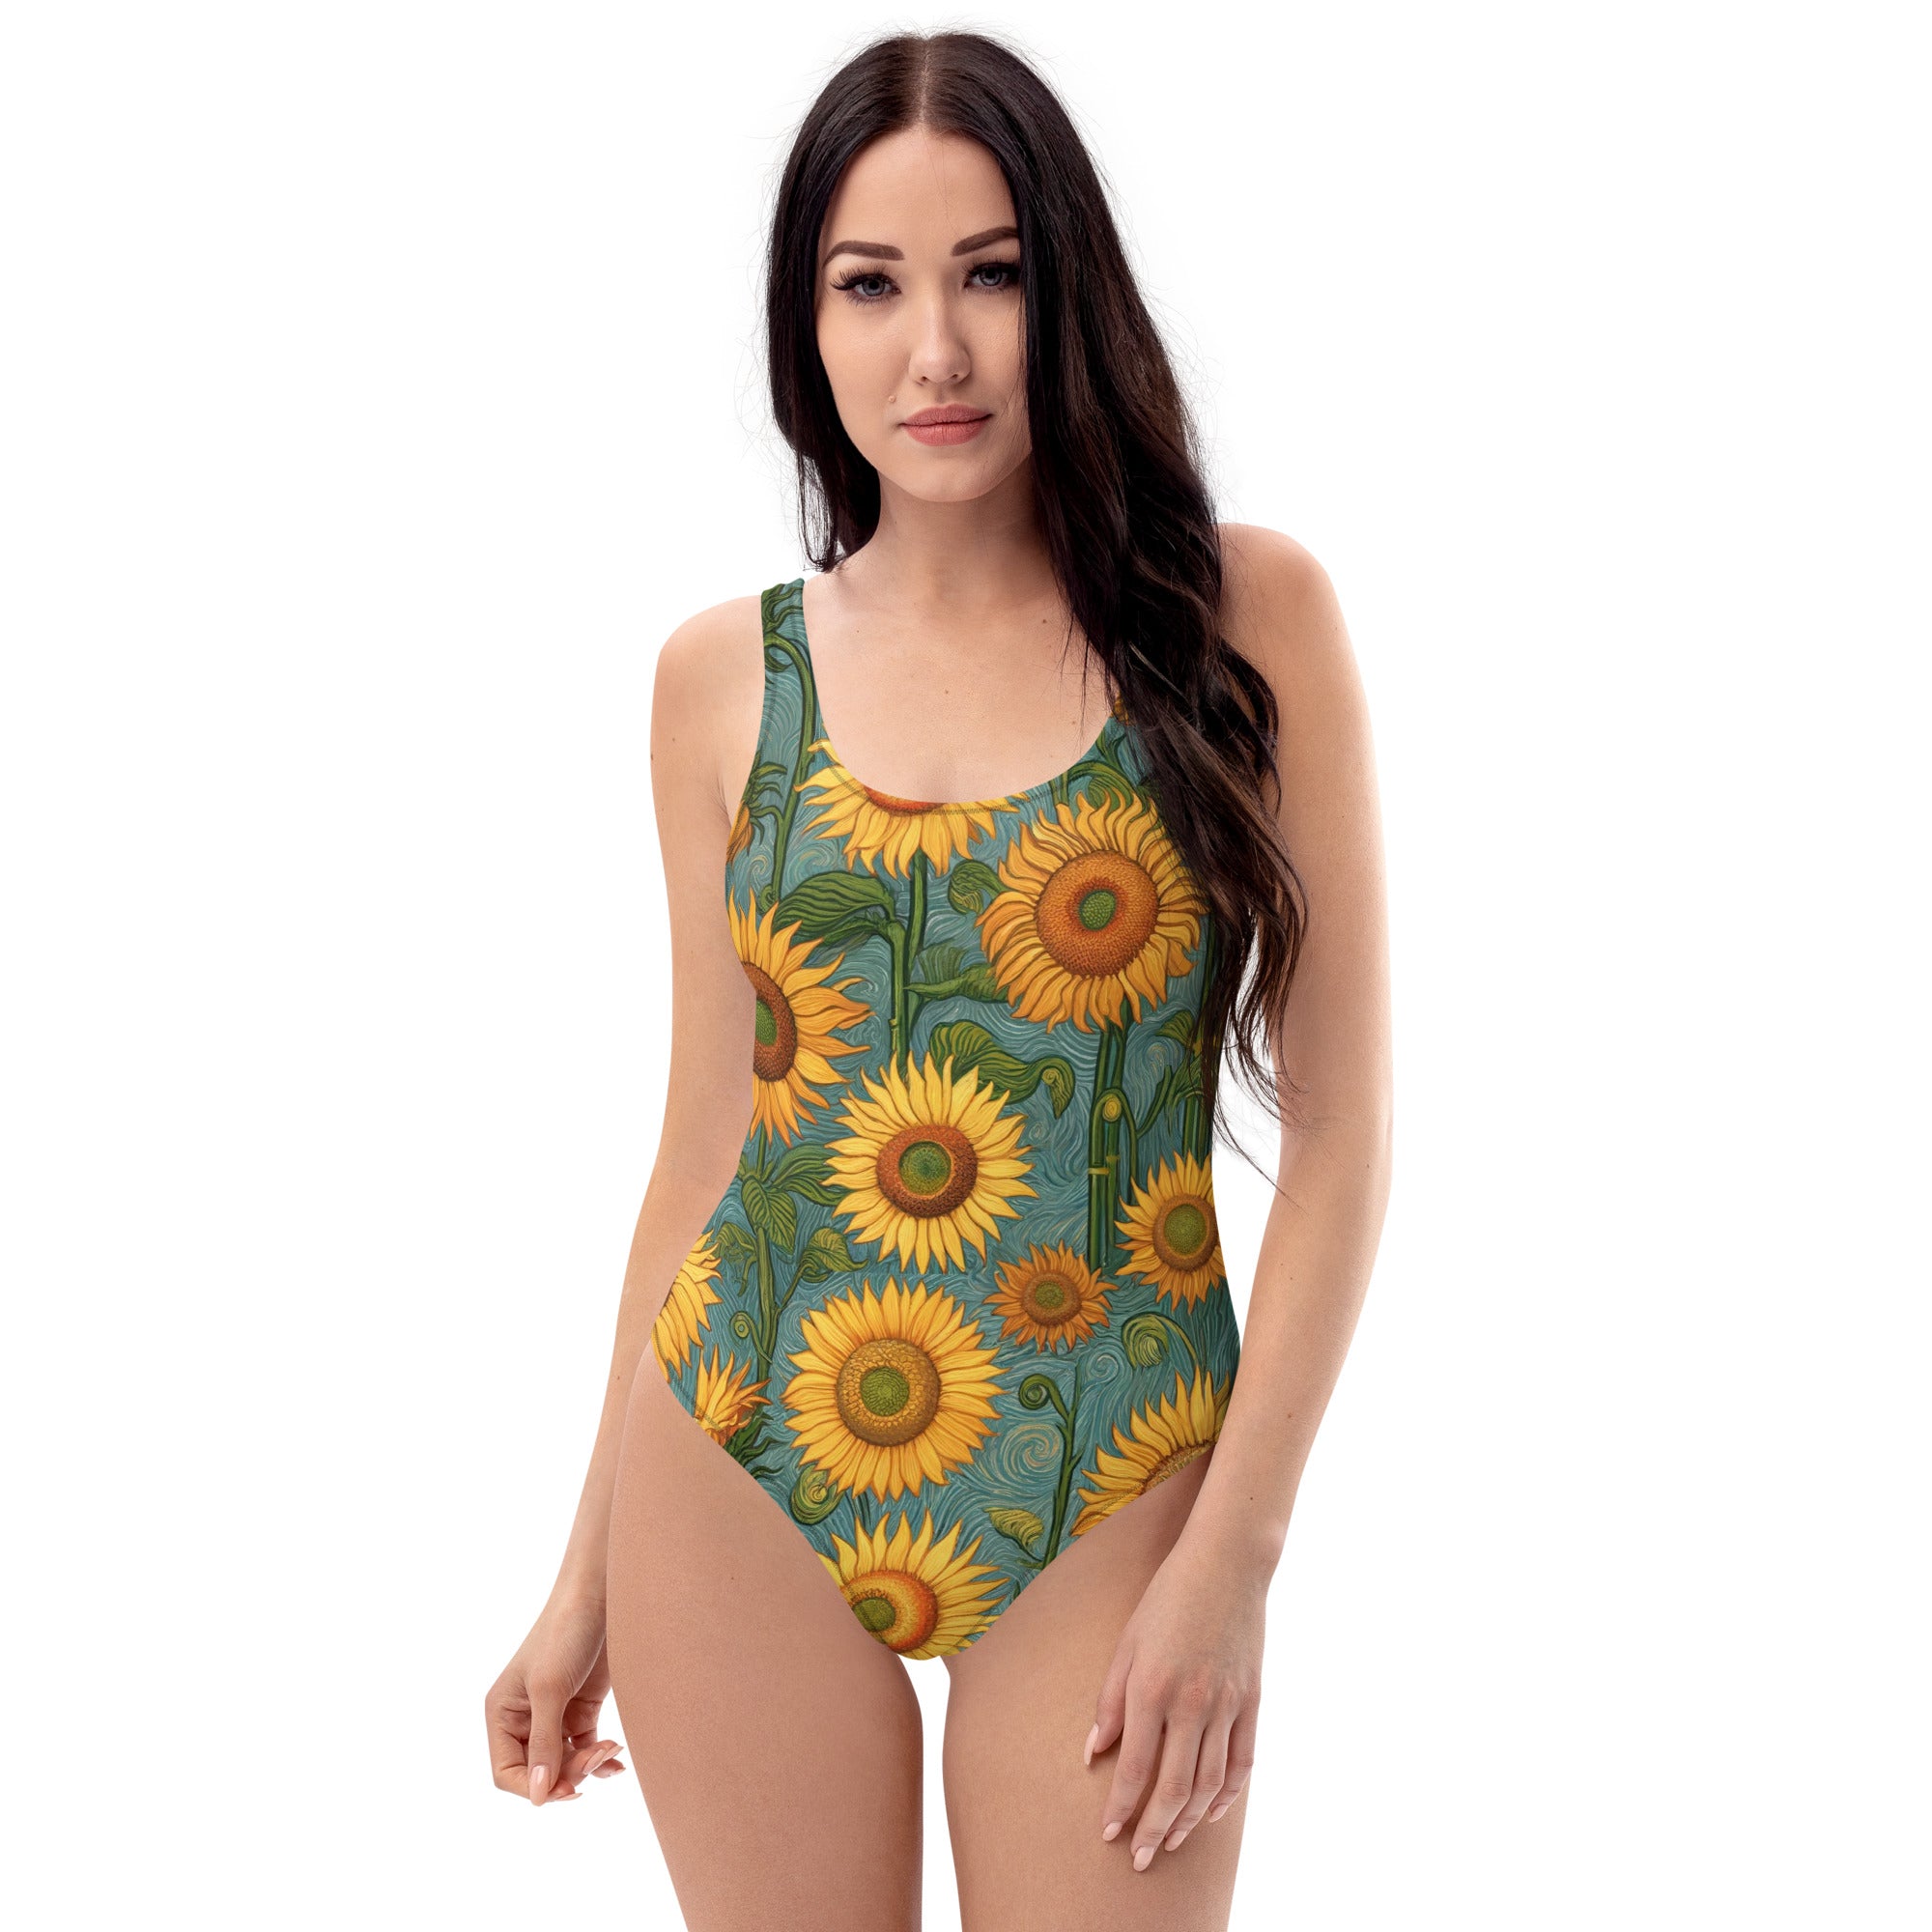 Vincent van Gogh 'Sunflowers' Famous Painting Swimsuit | Premium Art One Piece Swimsuit